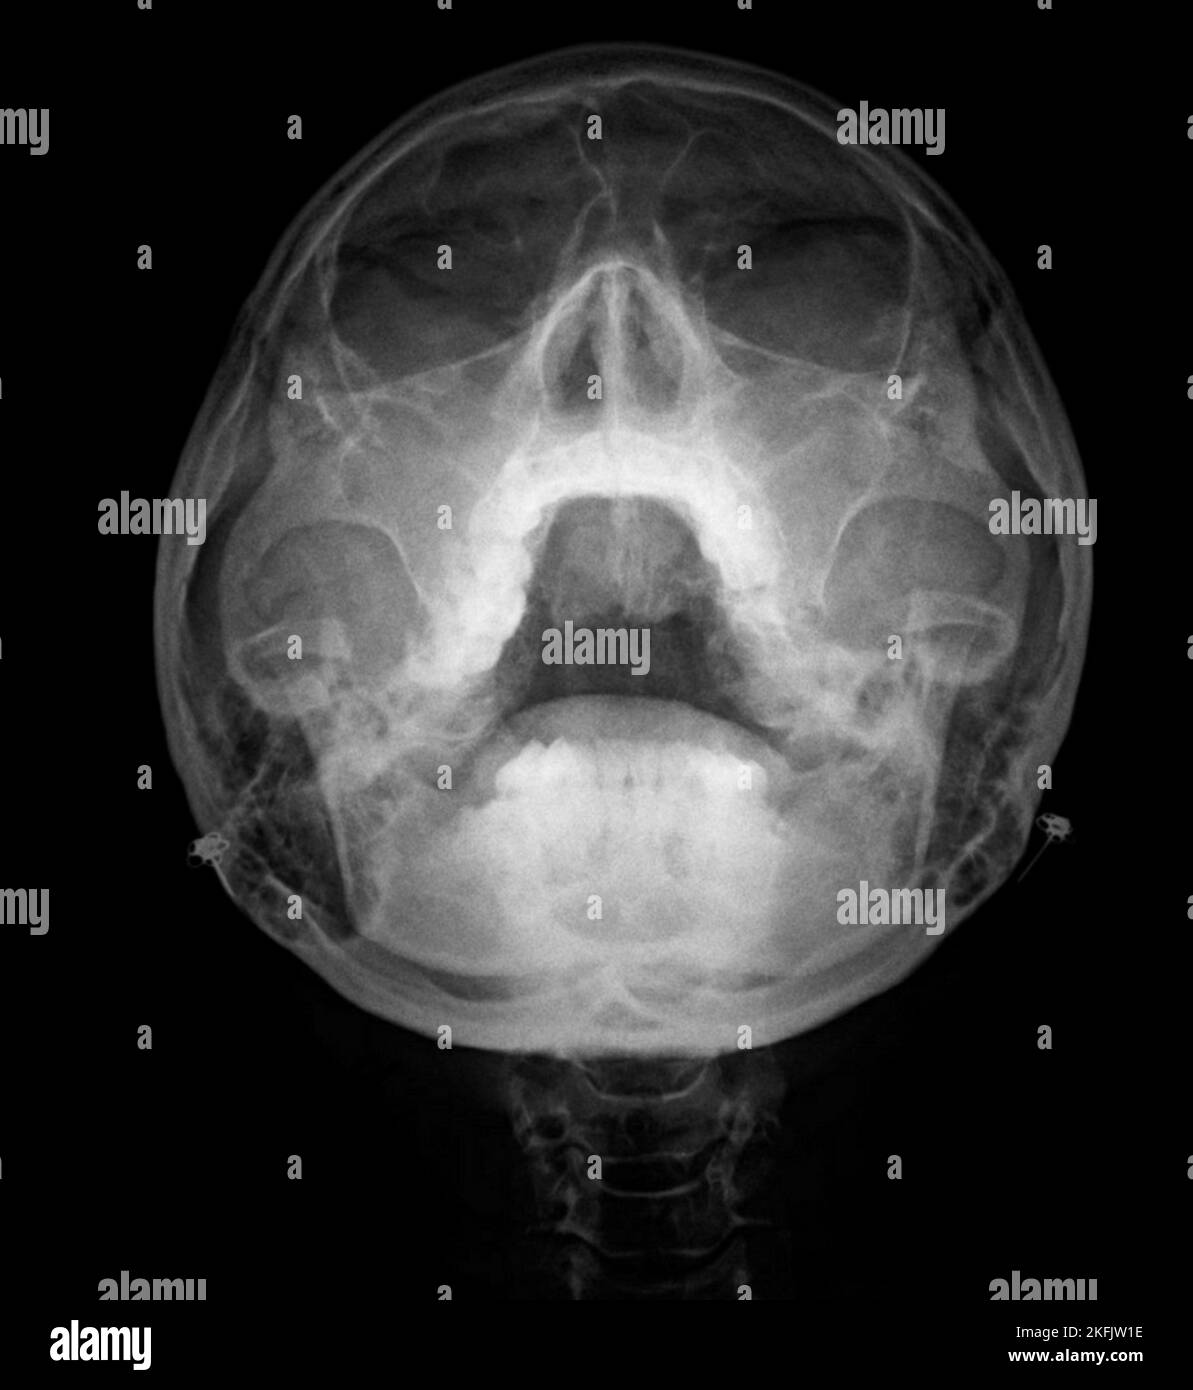 Sinusitis, X-ray Stock Photo